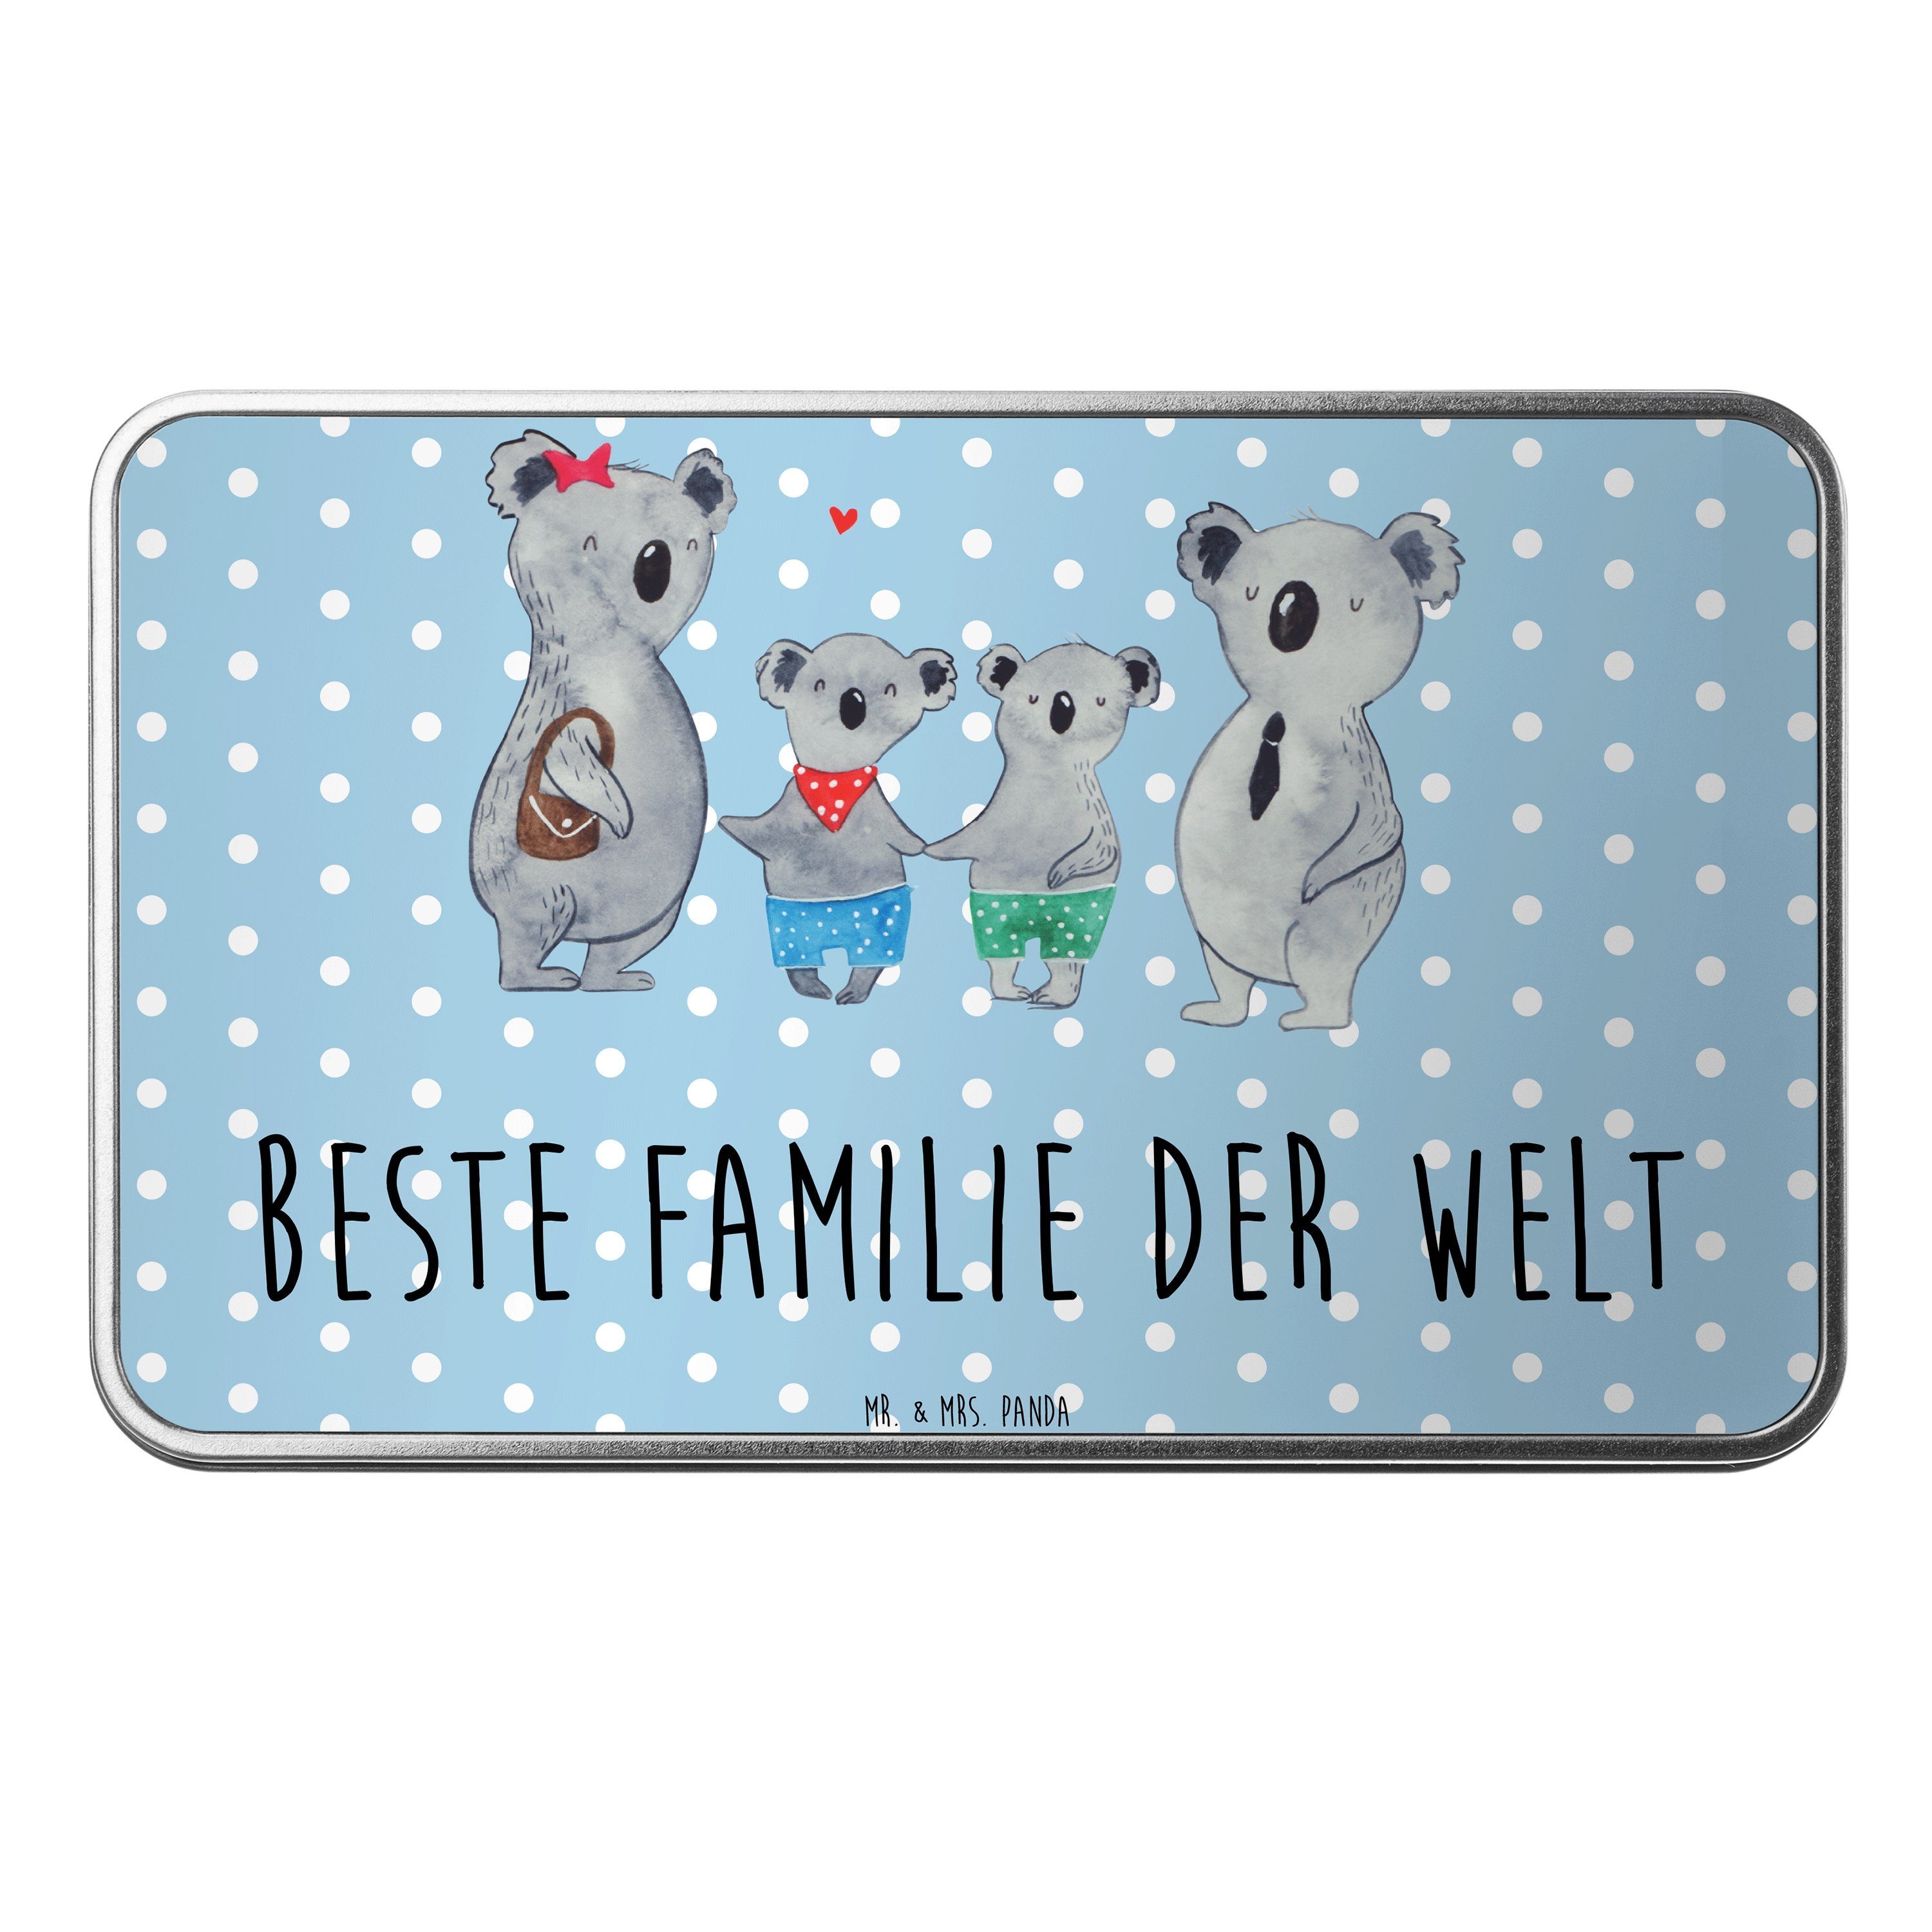 Mr. & Mrs. Panda Dose Koala Familie zwei - Blau Pastell - Geschenk, beste Familie, Mutterta (1 St)